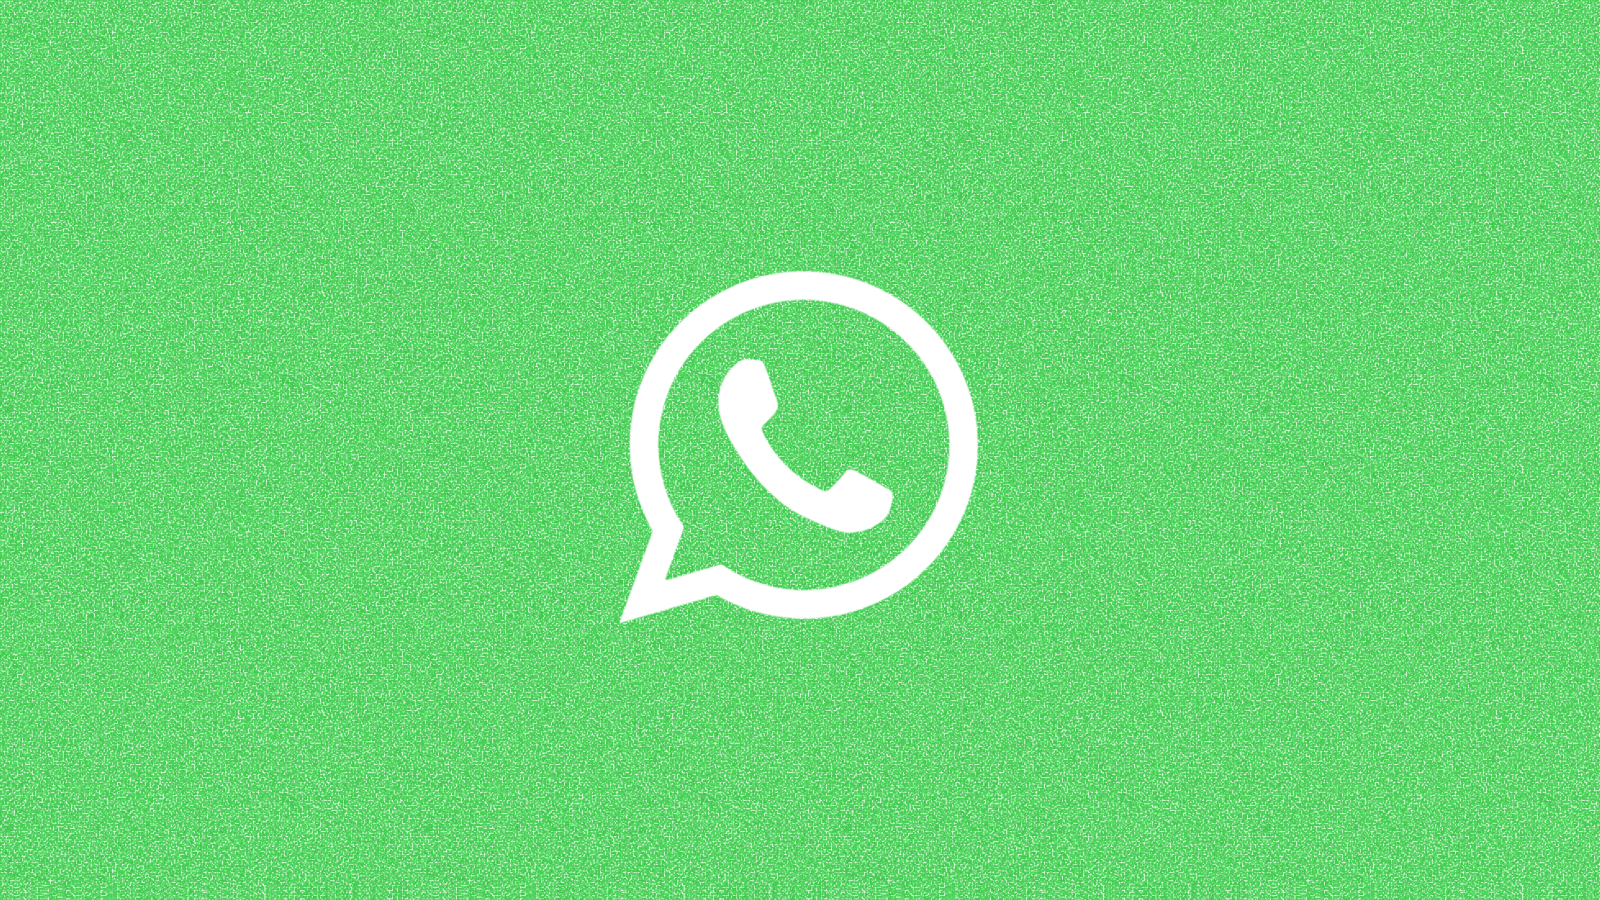 De functionaliteit waarmee WhatsApp ‘Fake News tegen wilt houden